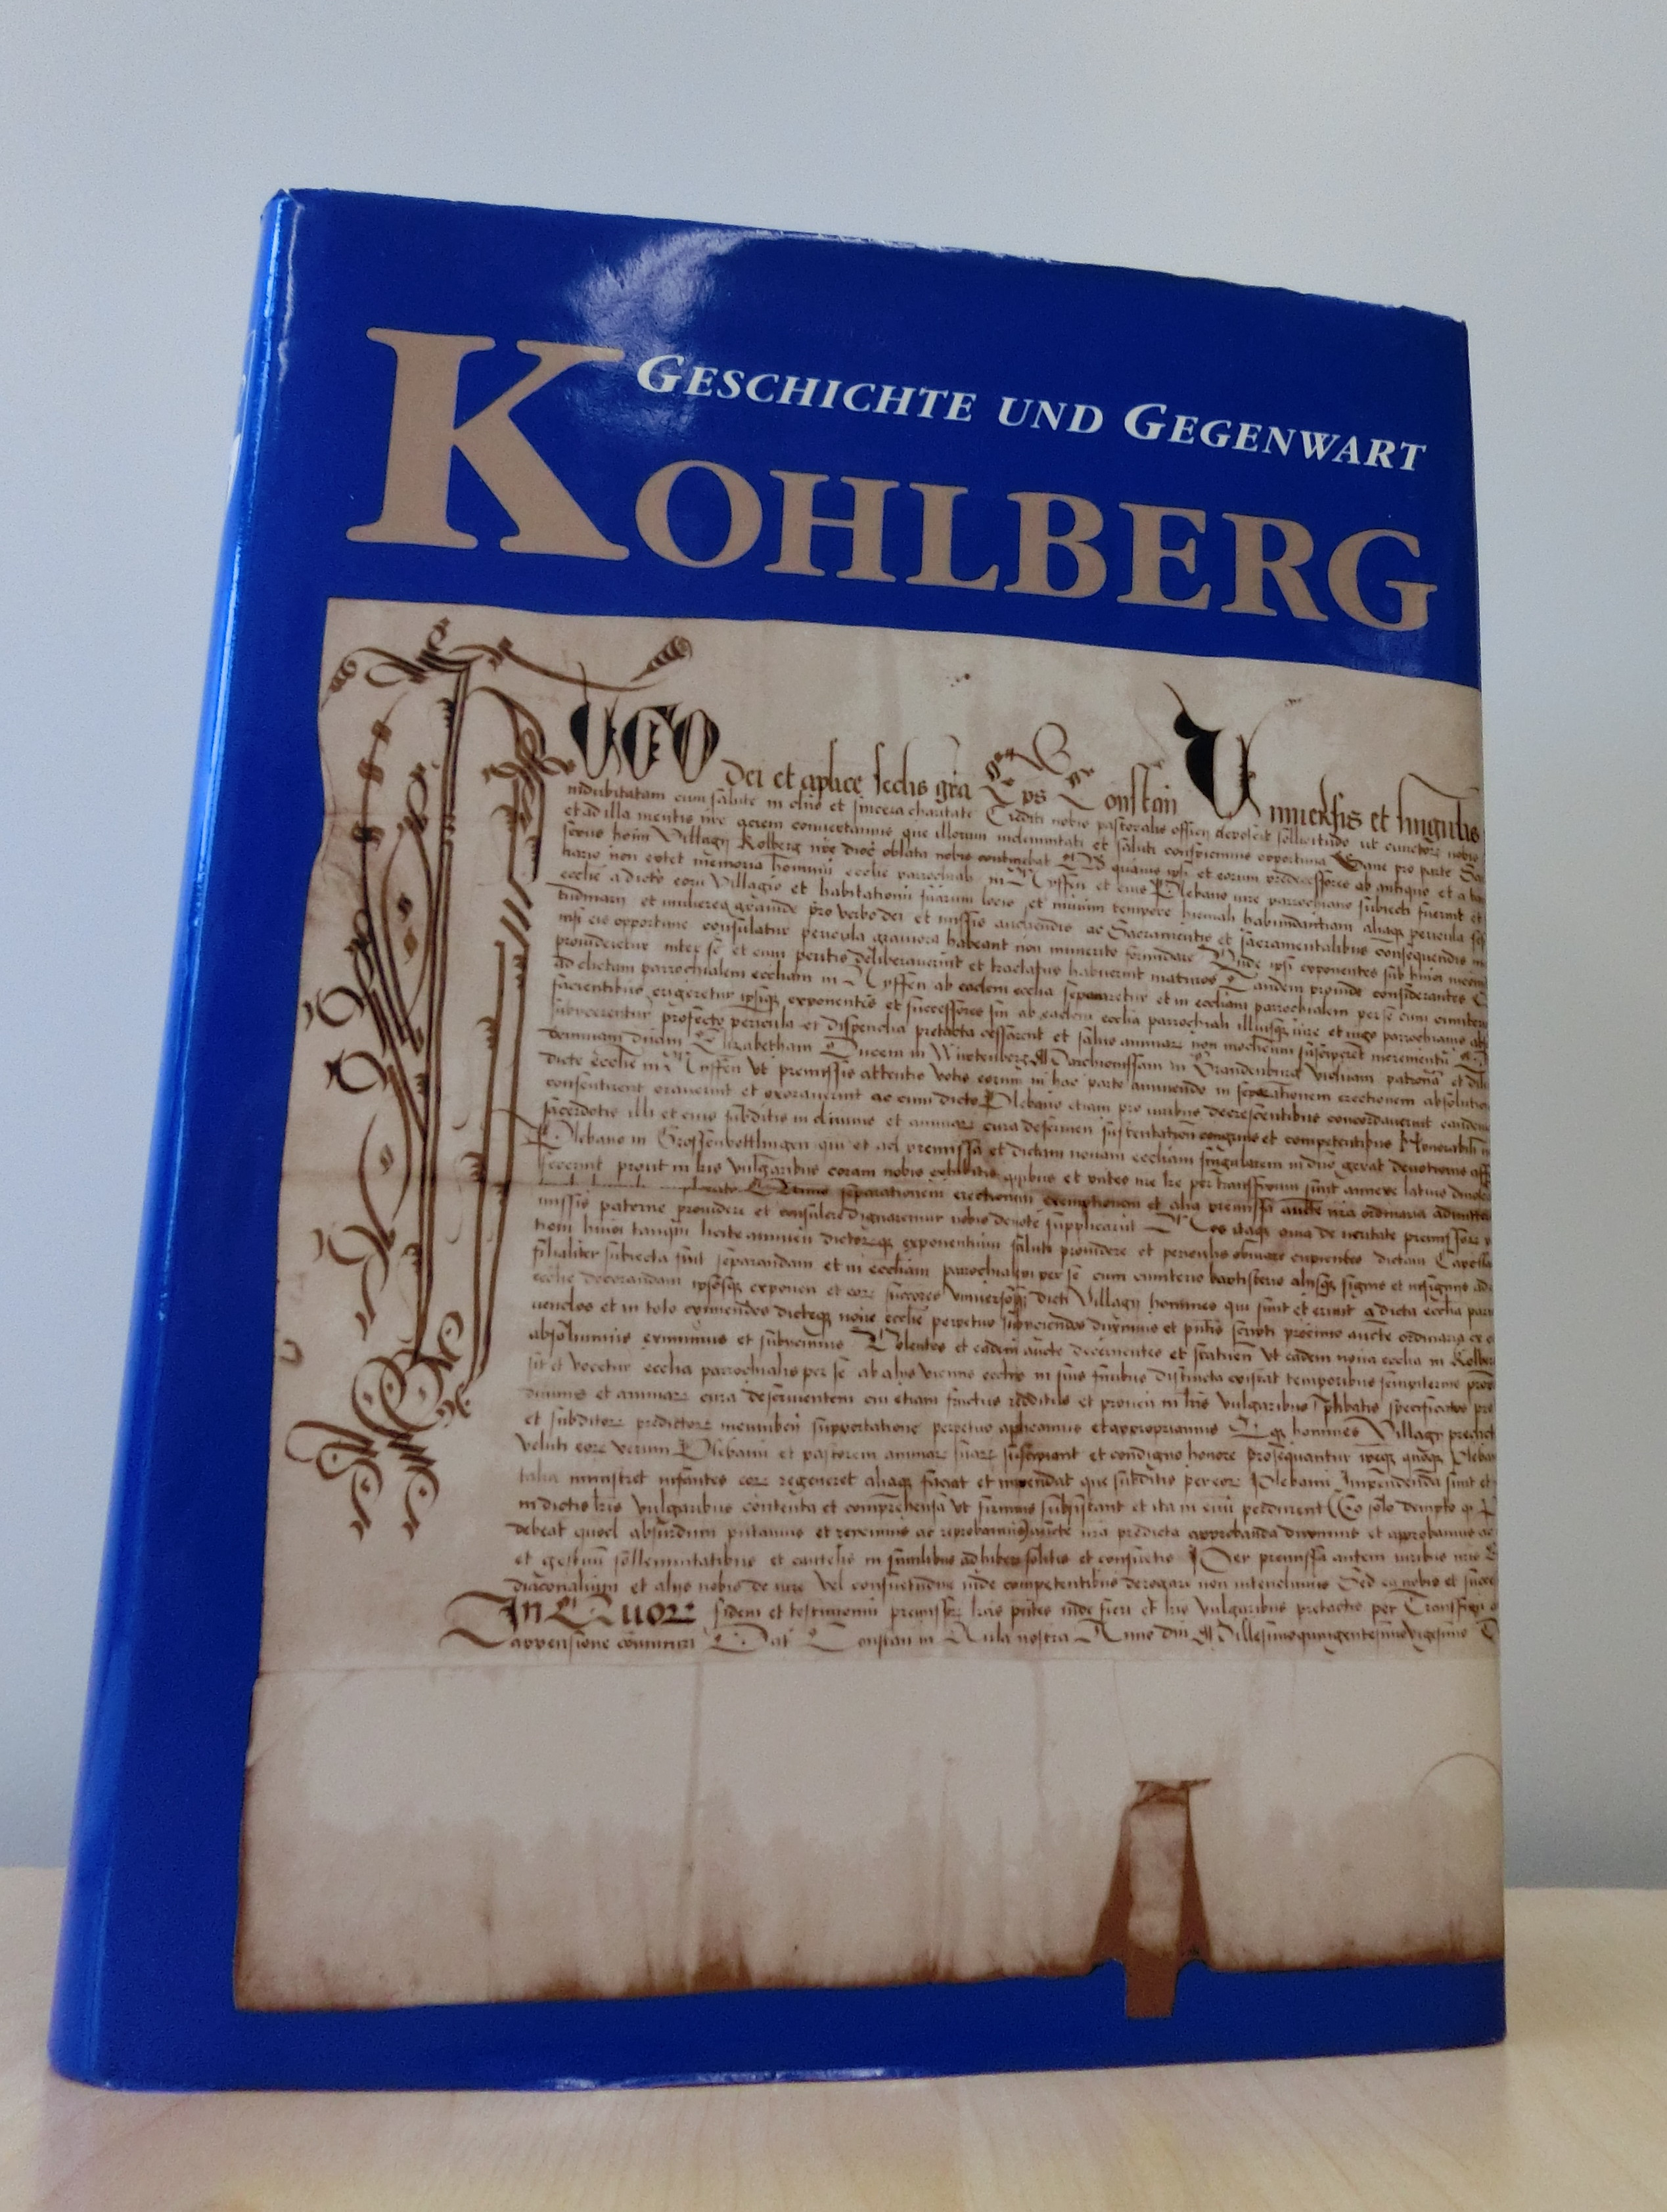  Kohlberg - Geschichte und Gegenwart 